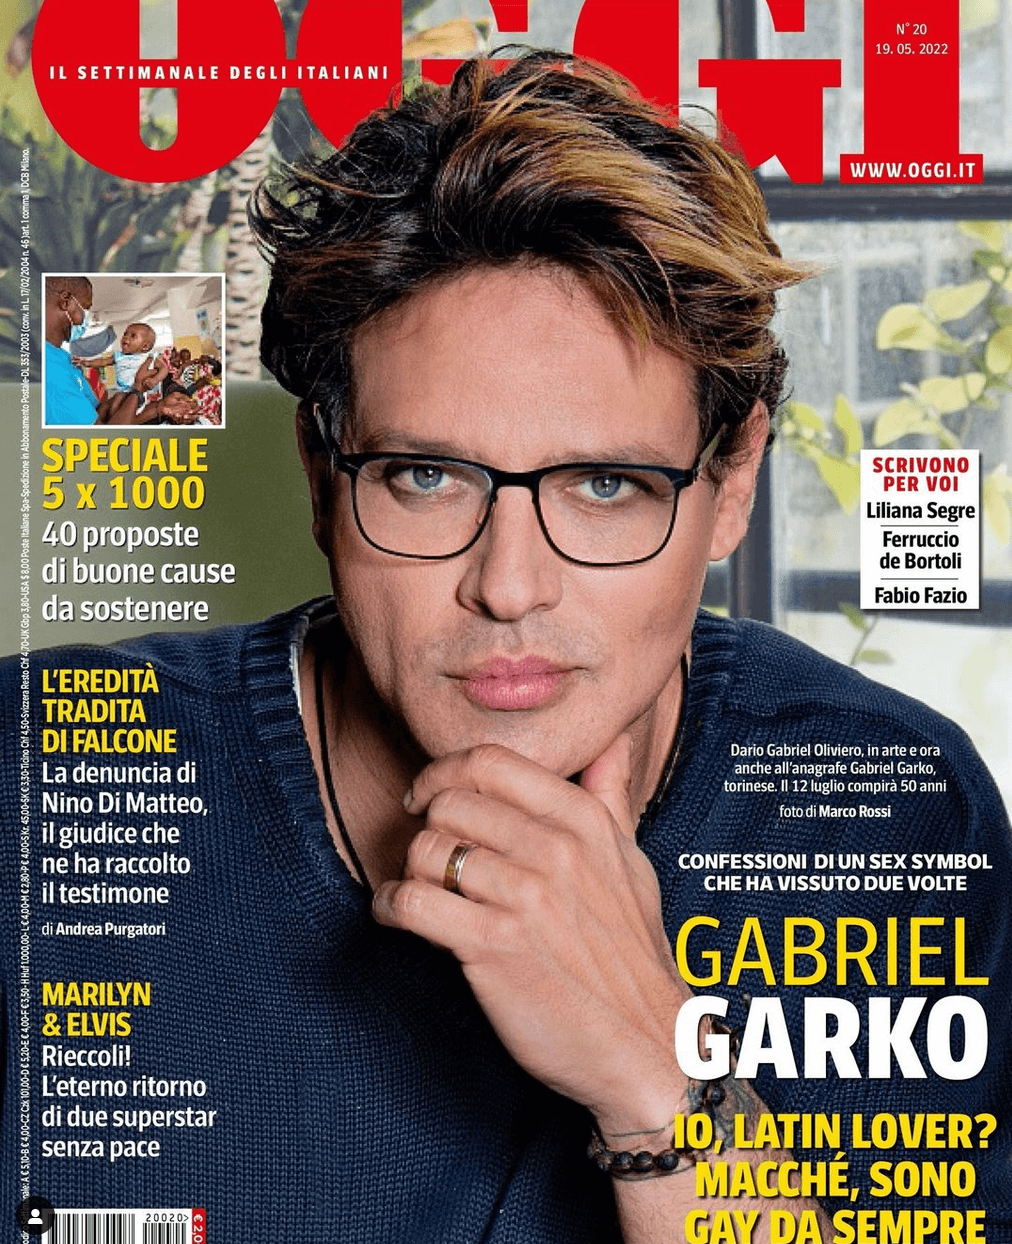 Gabriel Garko: "Sono gay da sempre, quale latin lover" - Gabriel Garko su Oggi - Gay.it